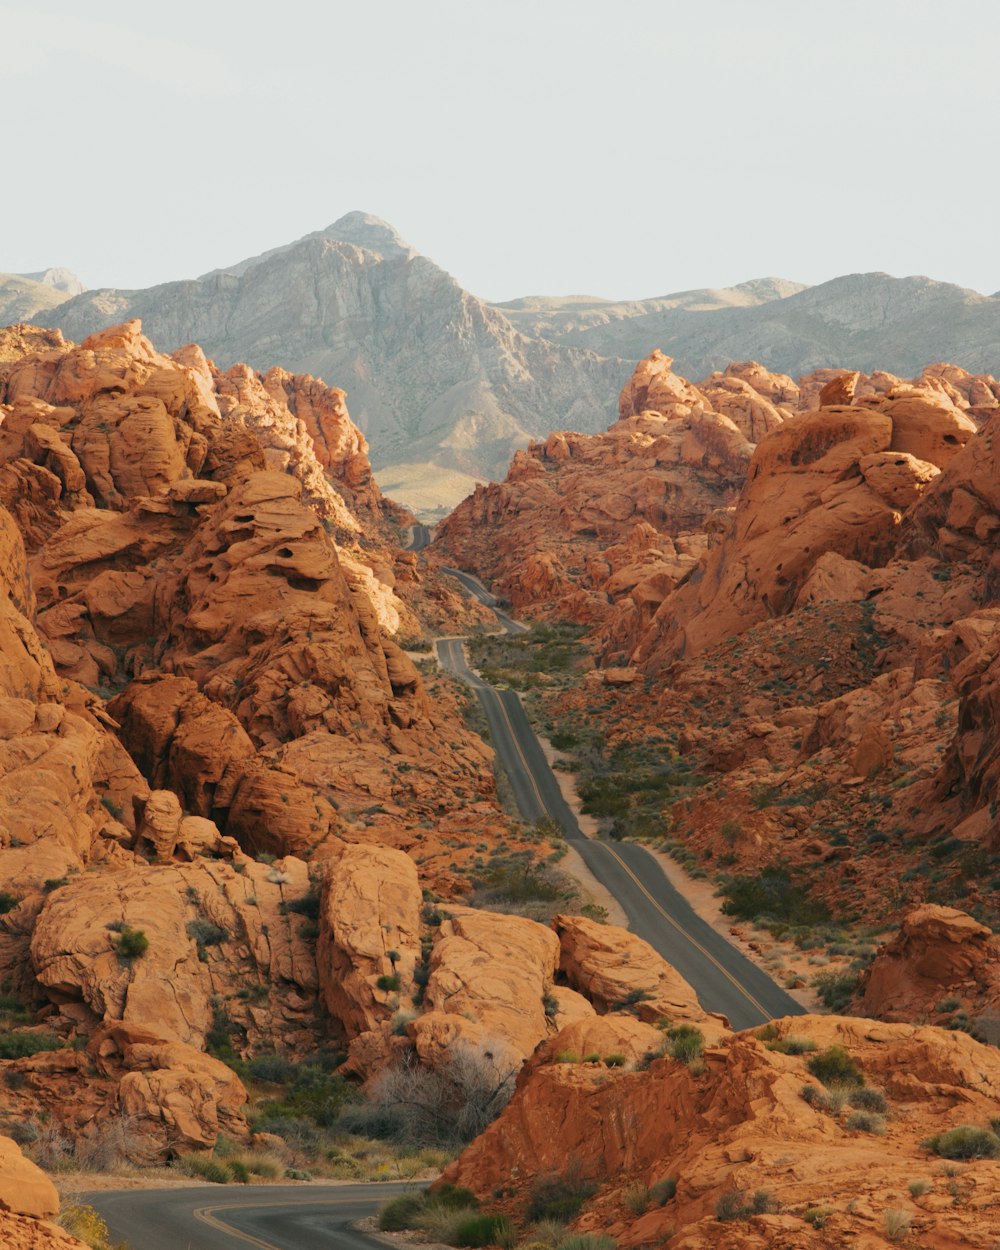 Carretera gris entre montañas rocosas marrones durante el día